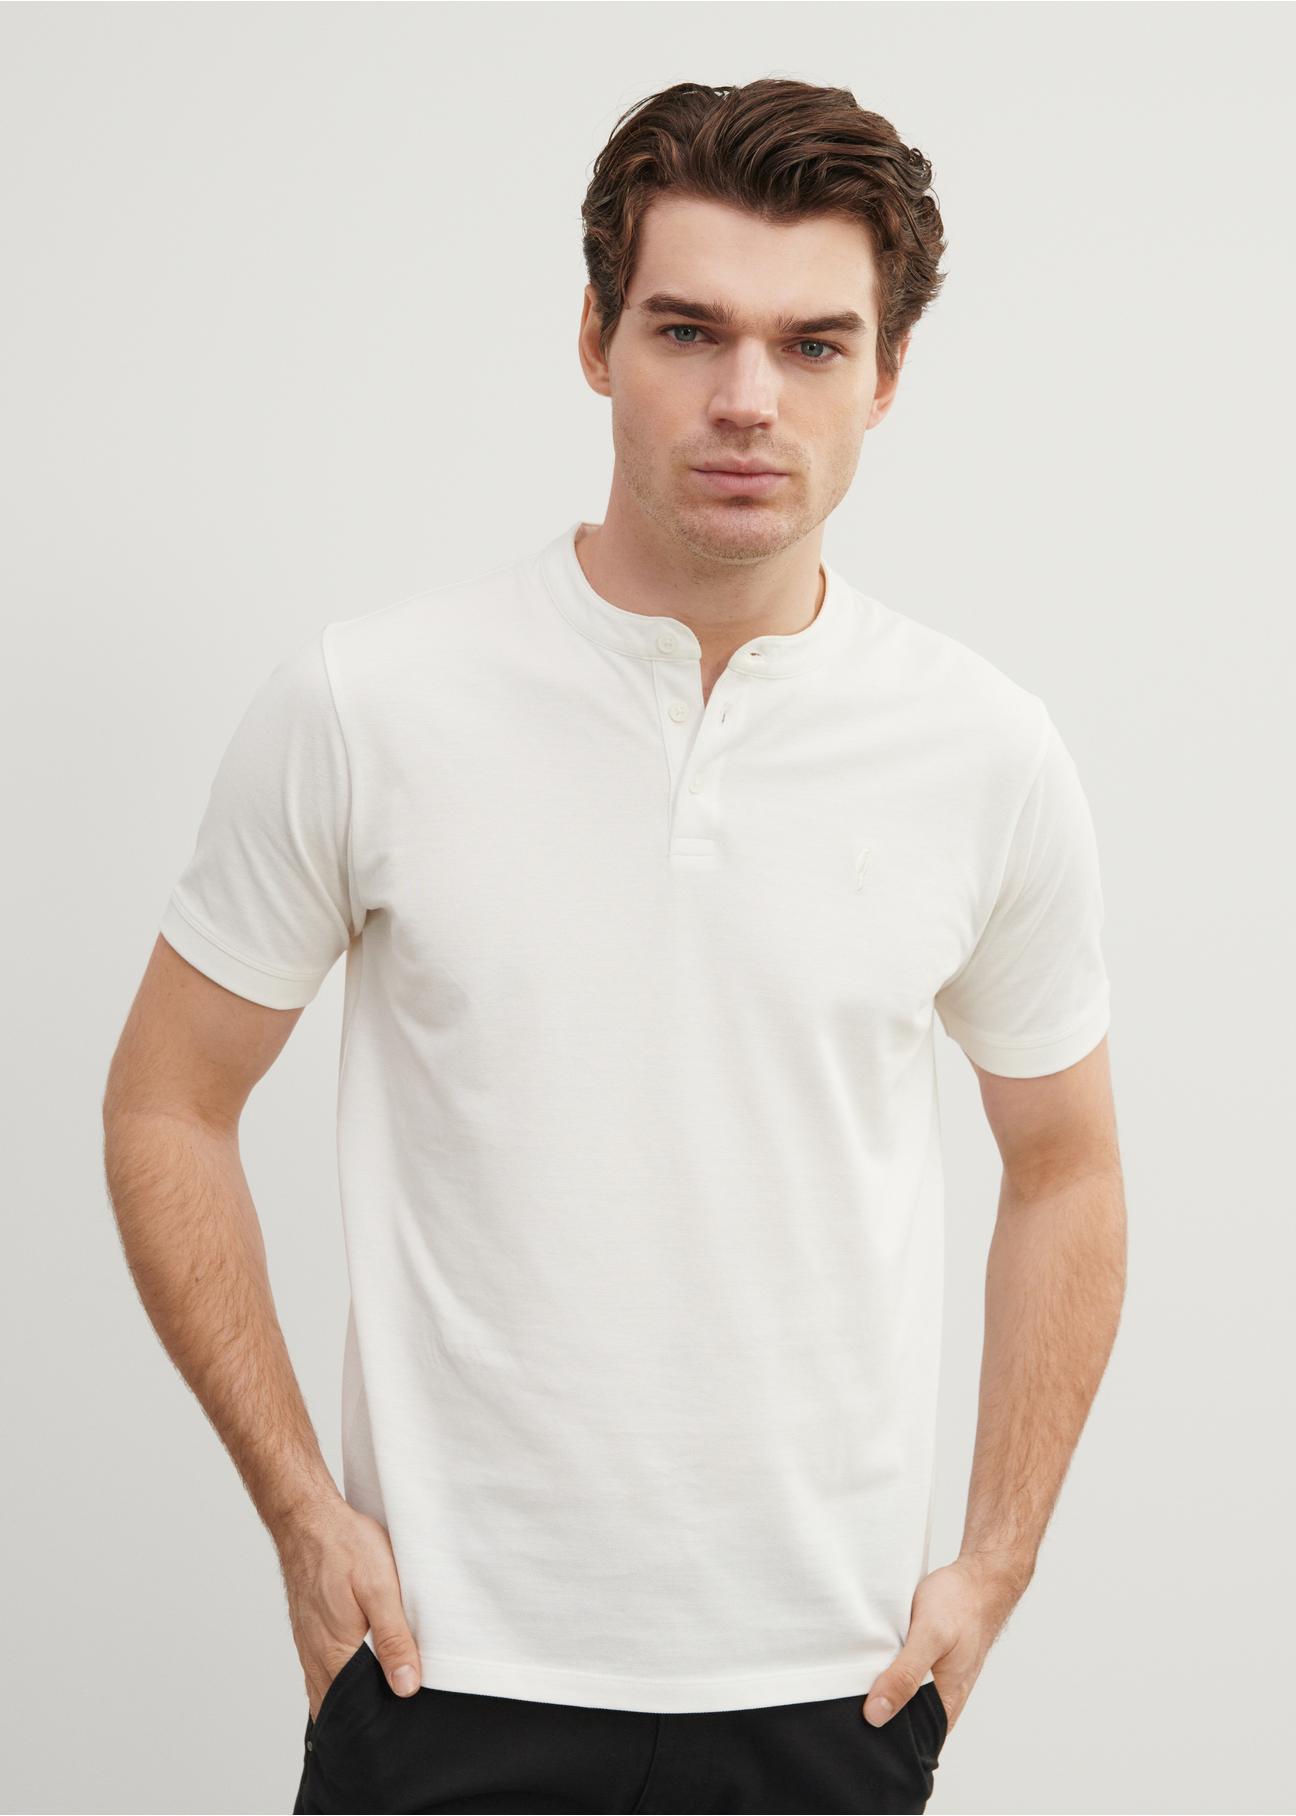 Biała koszulka polo ze stójką POLMT-0061-11(W24)